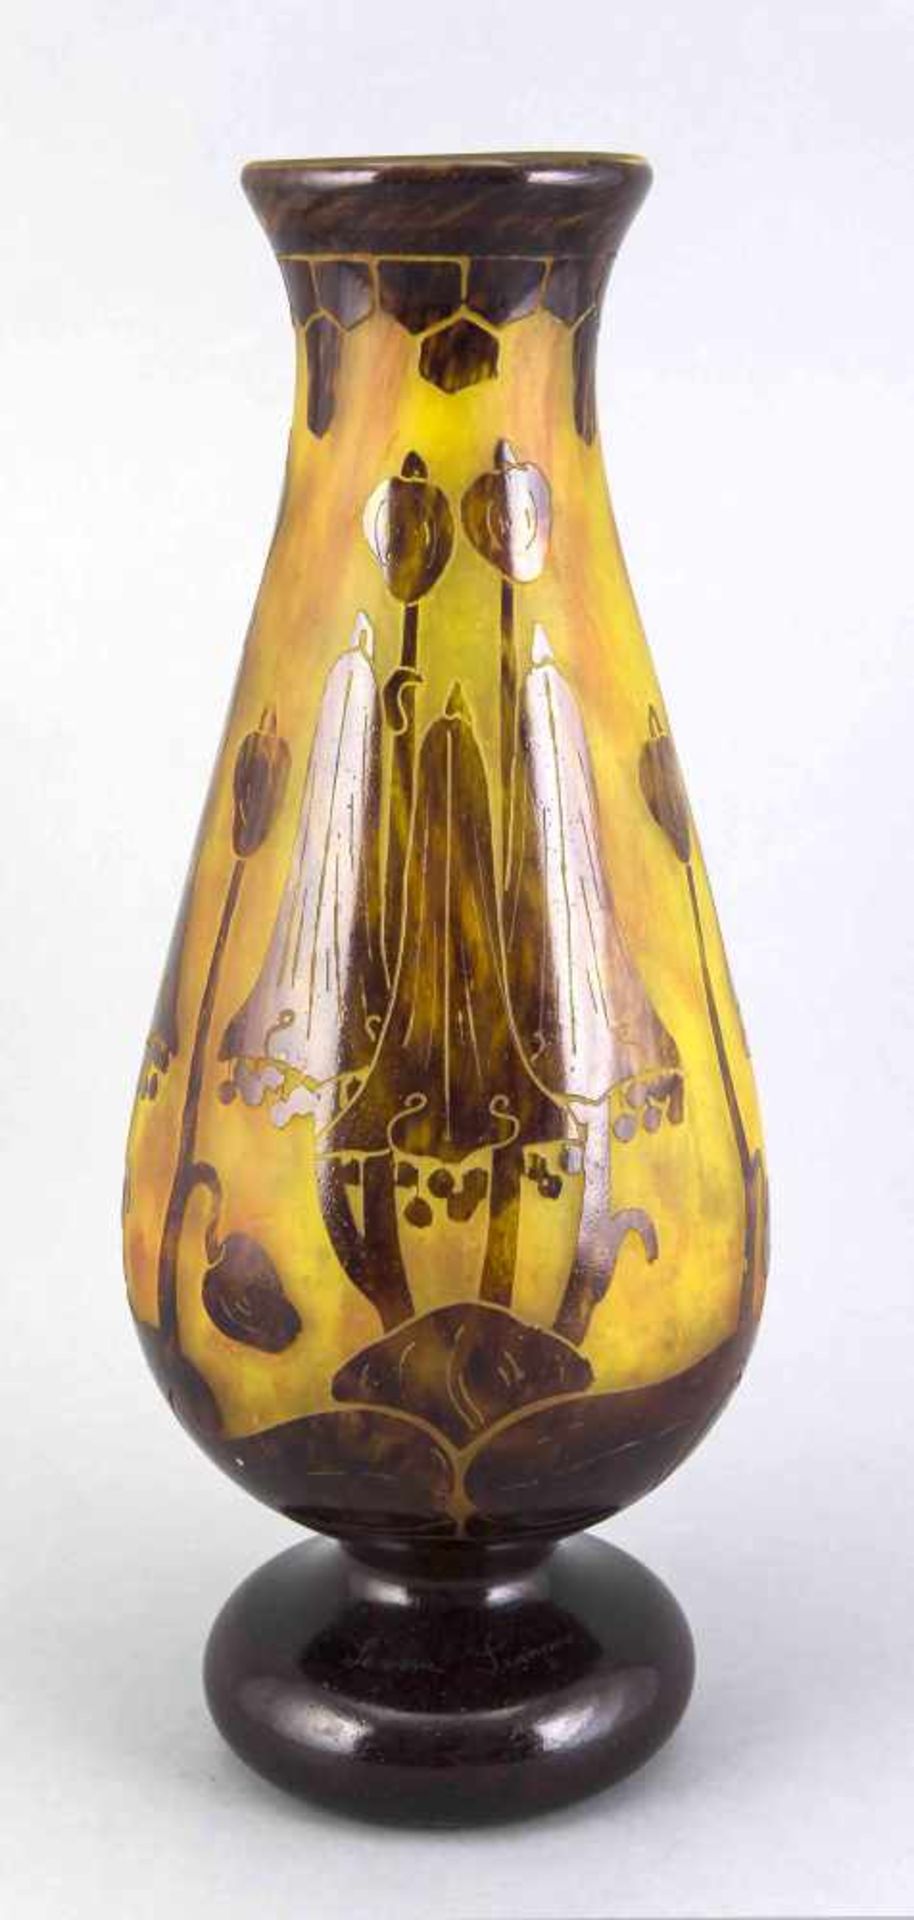 Vase, Le verre Francais, Frankreich, 20. Jh., in der Art des Jugendstils, runder gewölbter Stand,